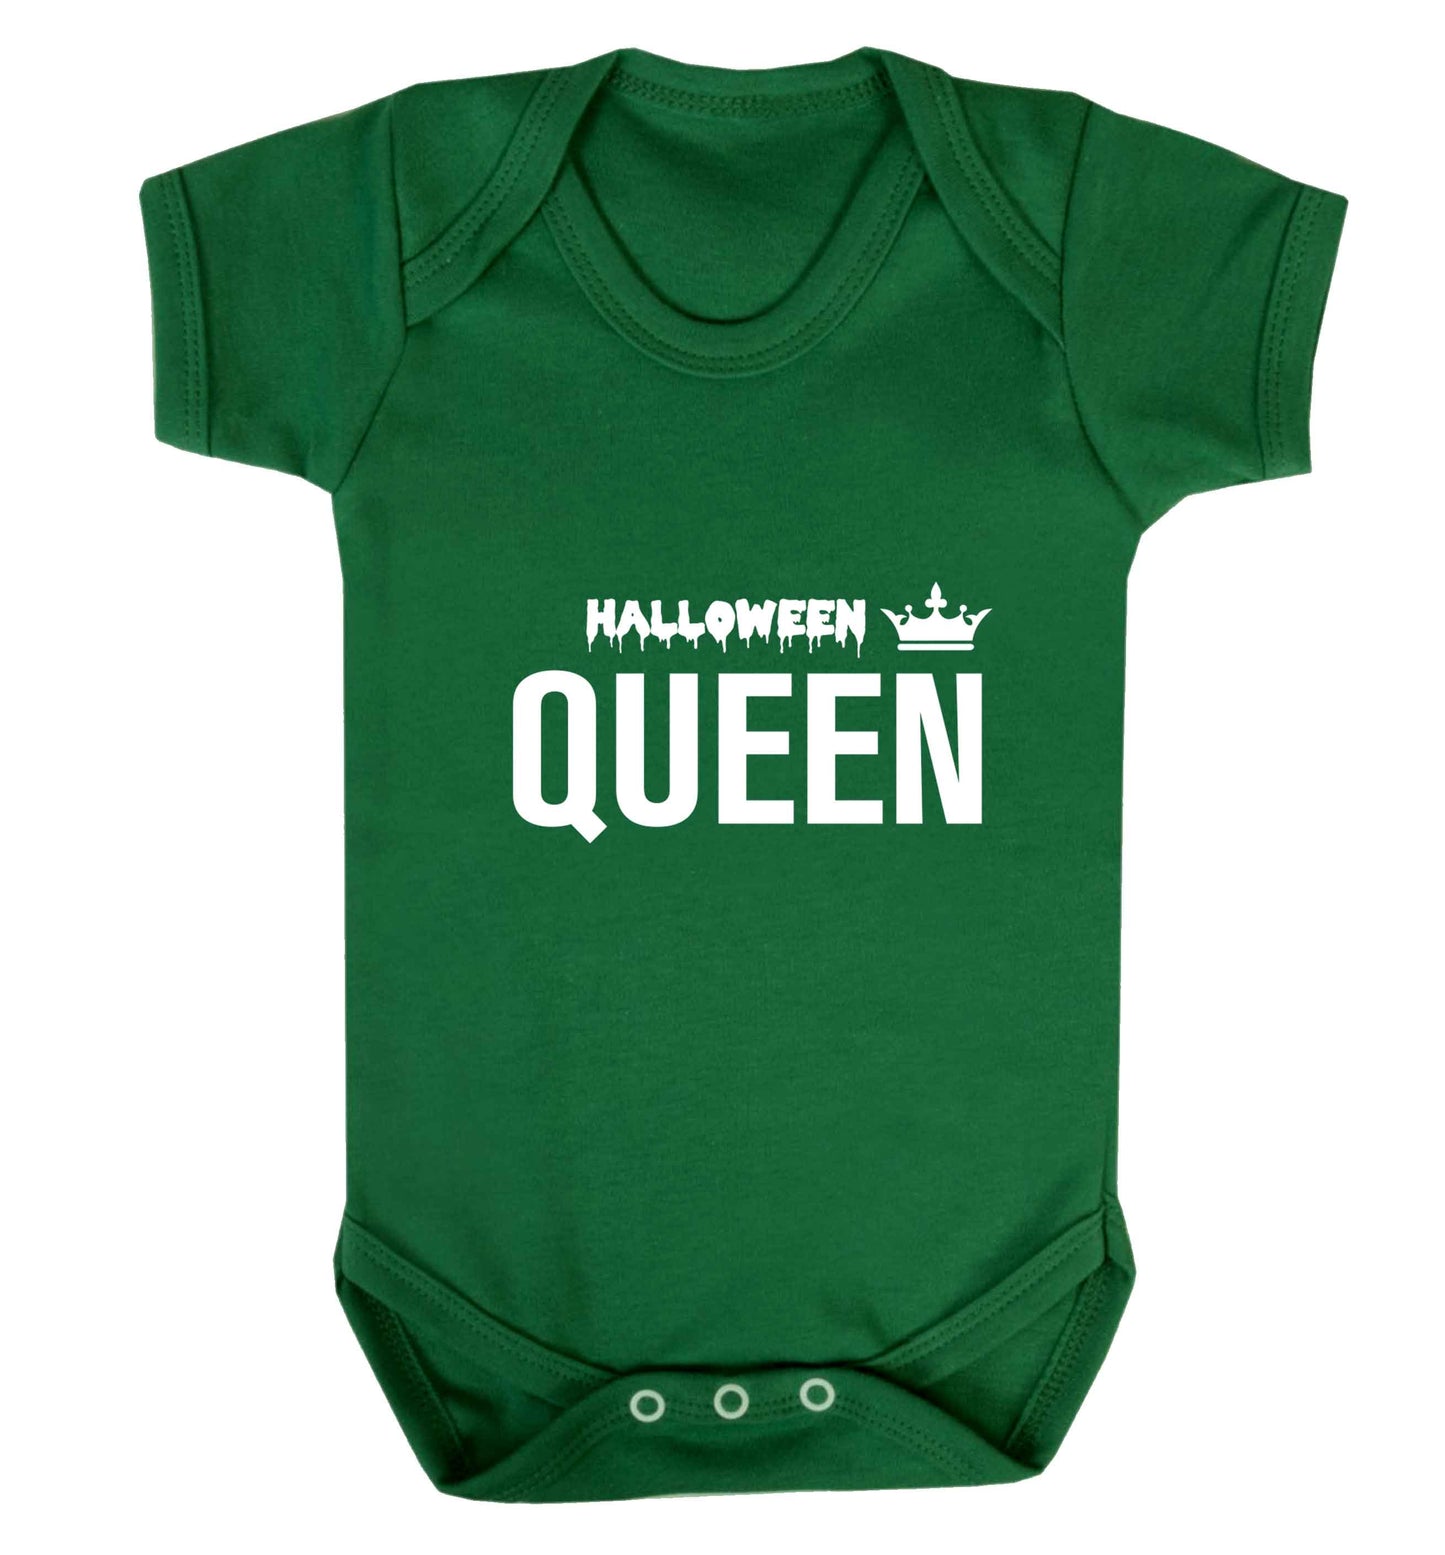 Halloween queen baby vest green 18-24 months